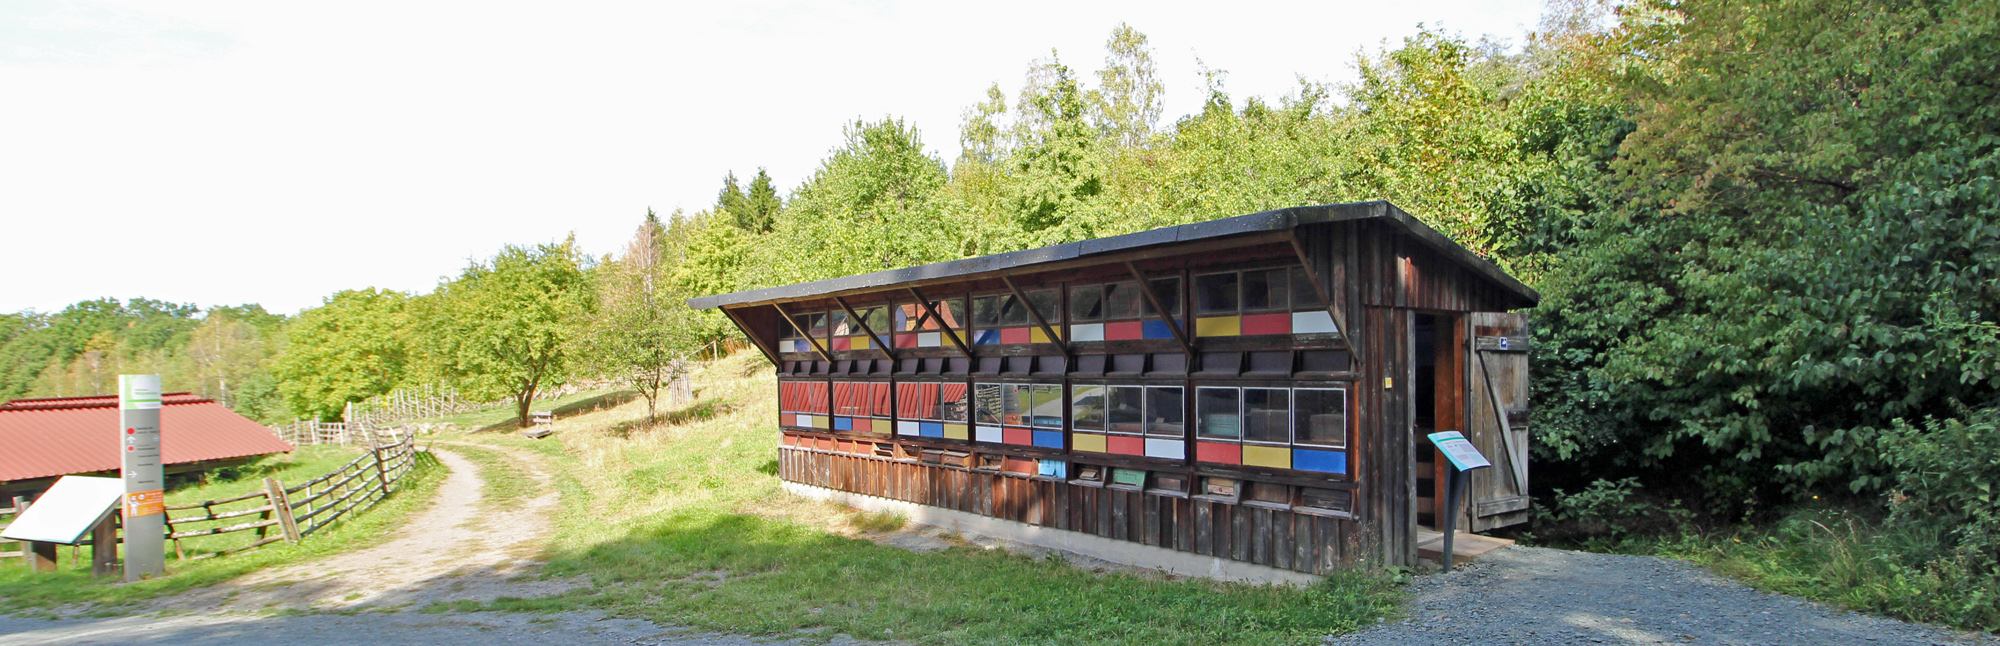 Bienenhaus aus Mammolshain in der Baugruppe Rhein-Main